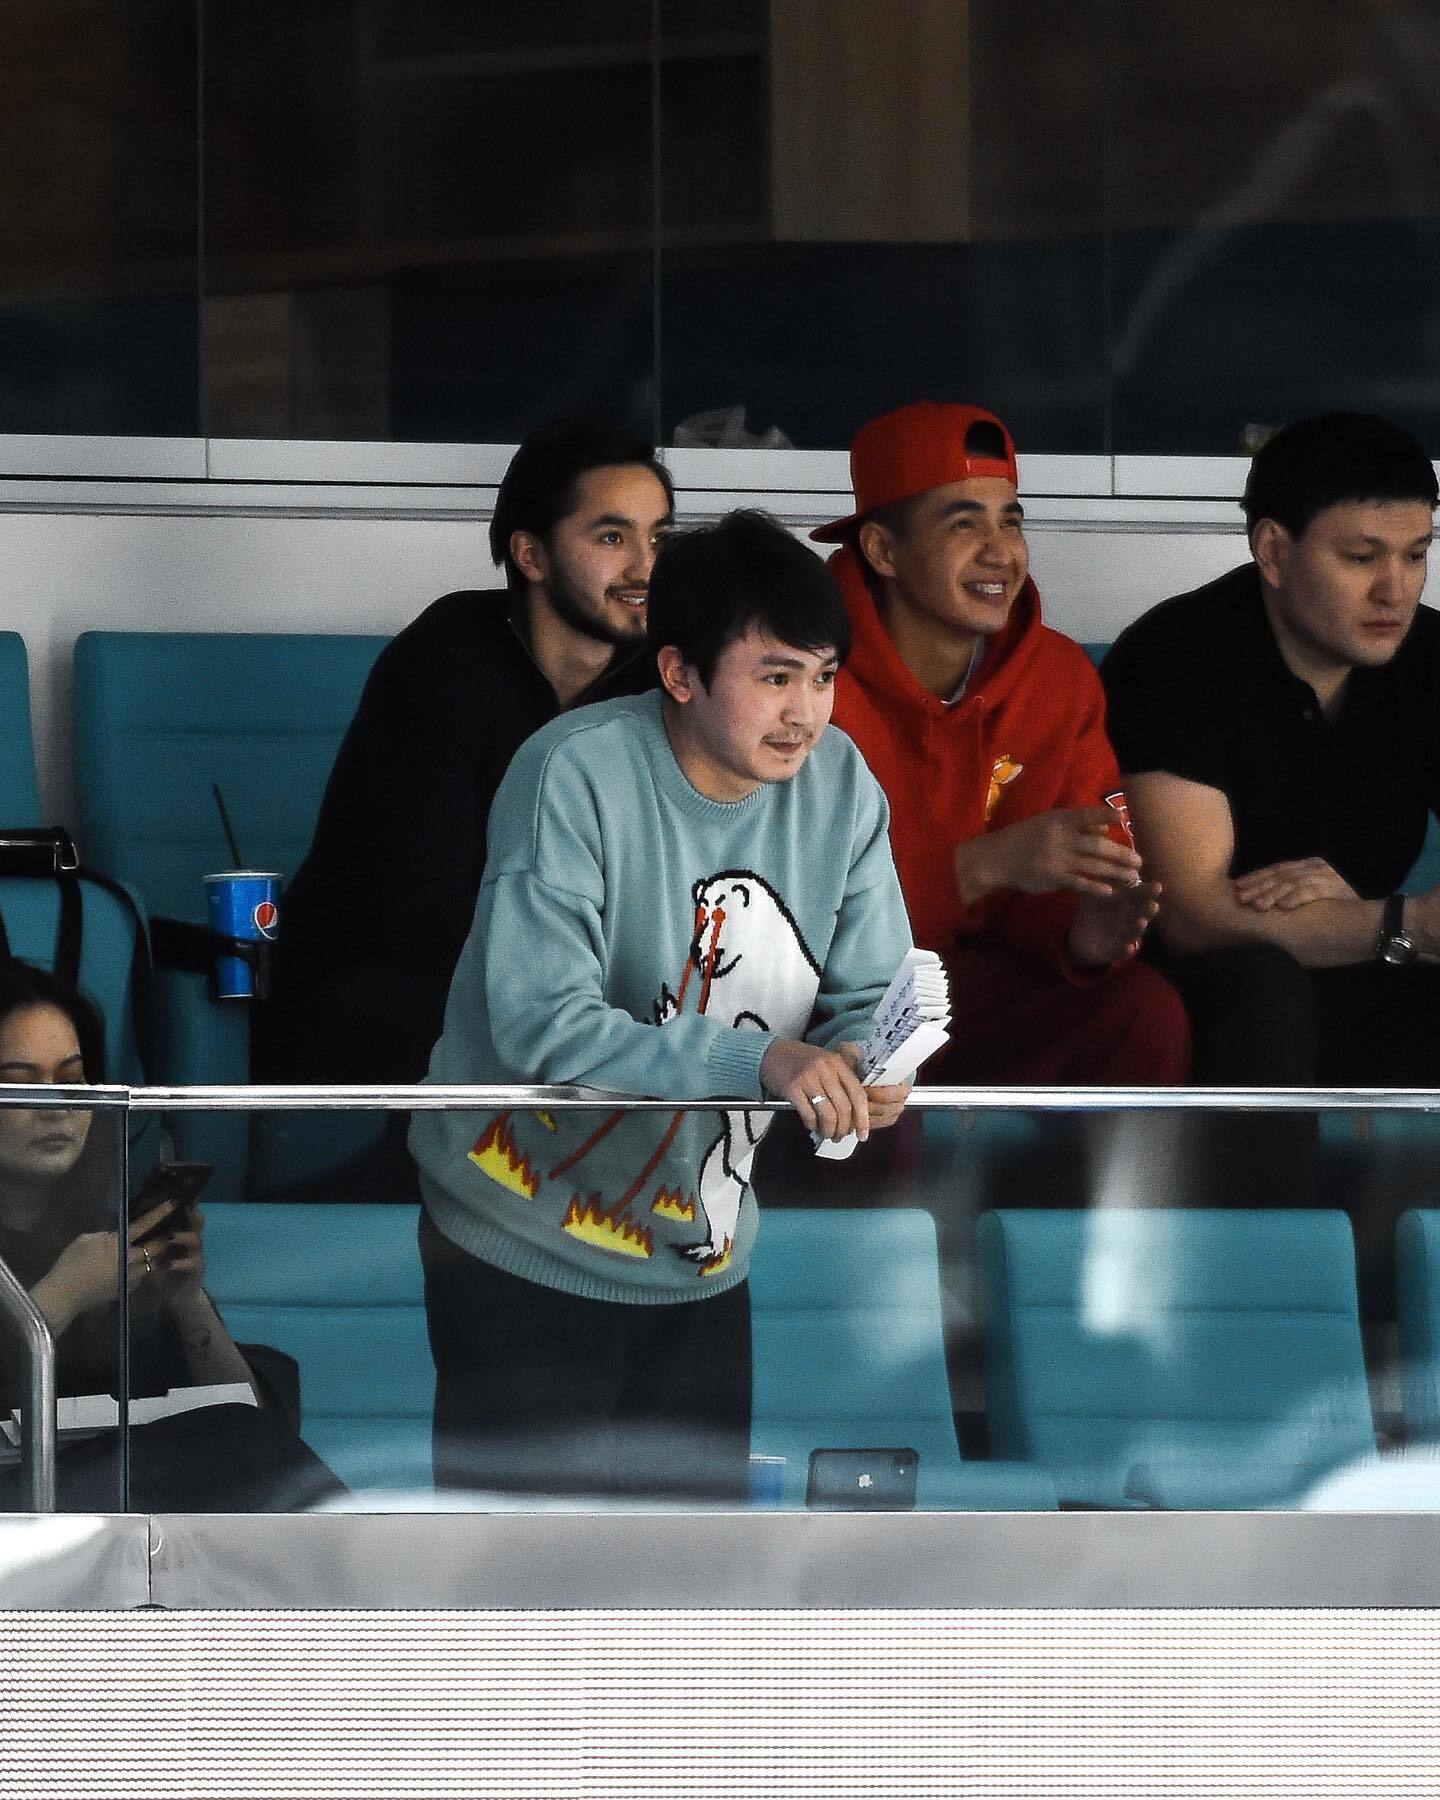 Российских хоккеистов не хотят видеть в Казахстане: обиженные болельщики РФ грозят денацификацией